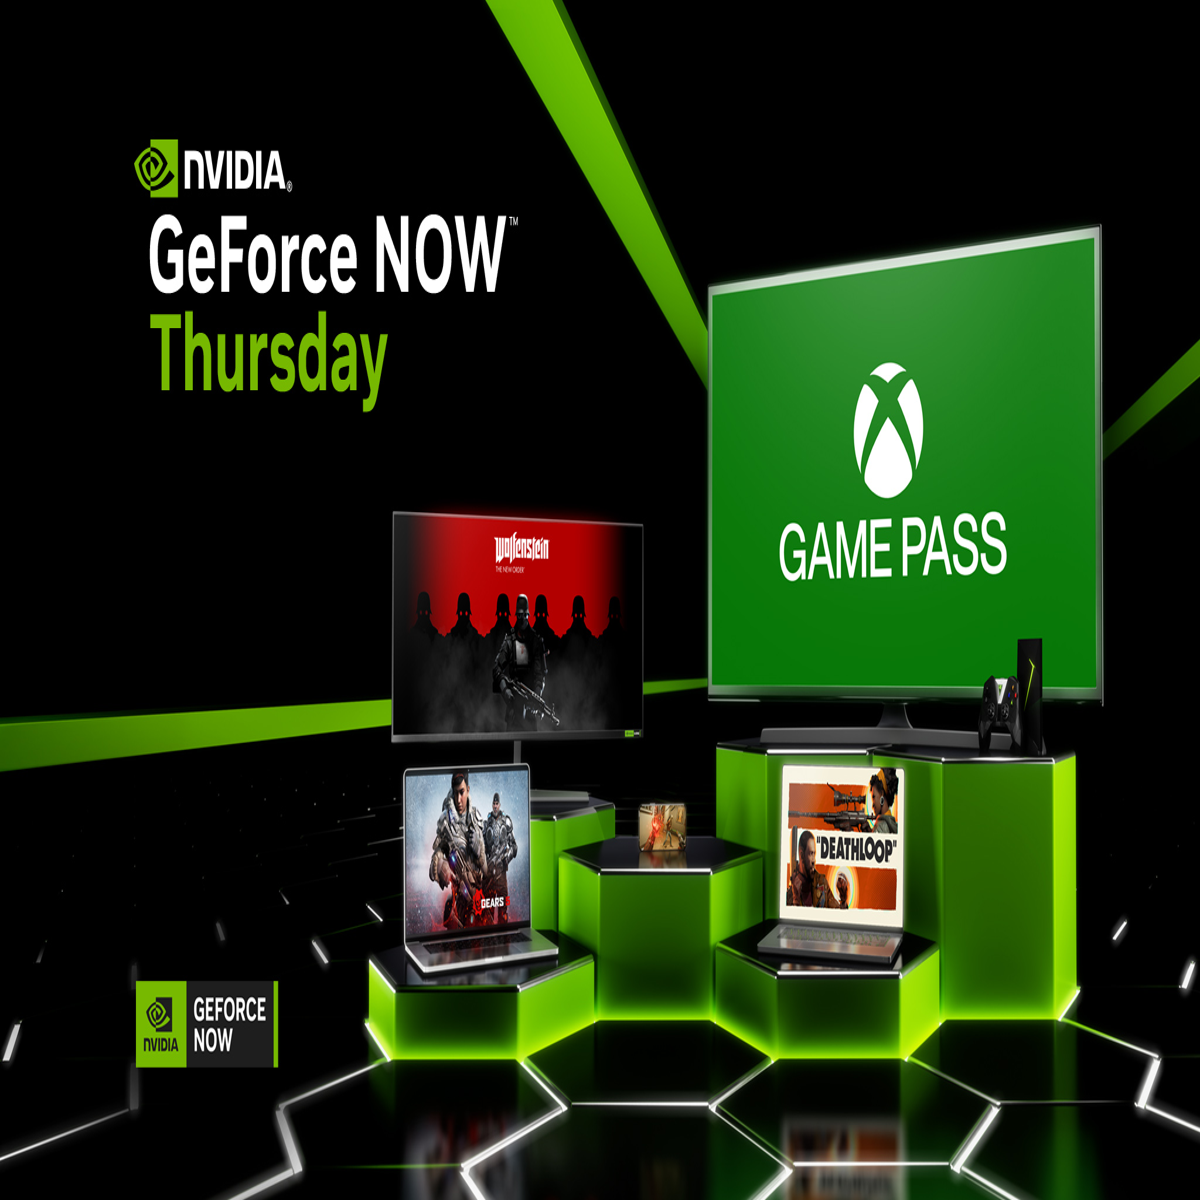 GTA 5 para PC e PS4: código de Xbox 360 sugere lançamento para plataformas